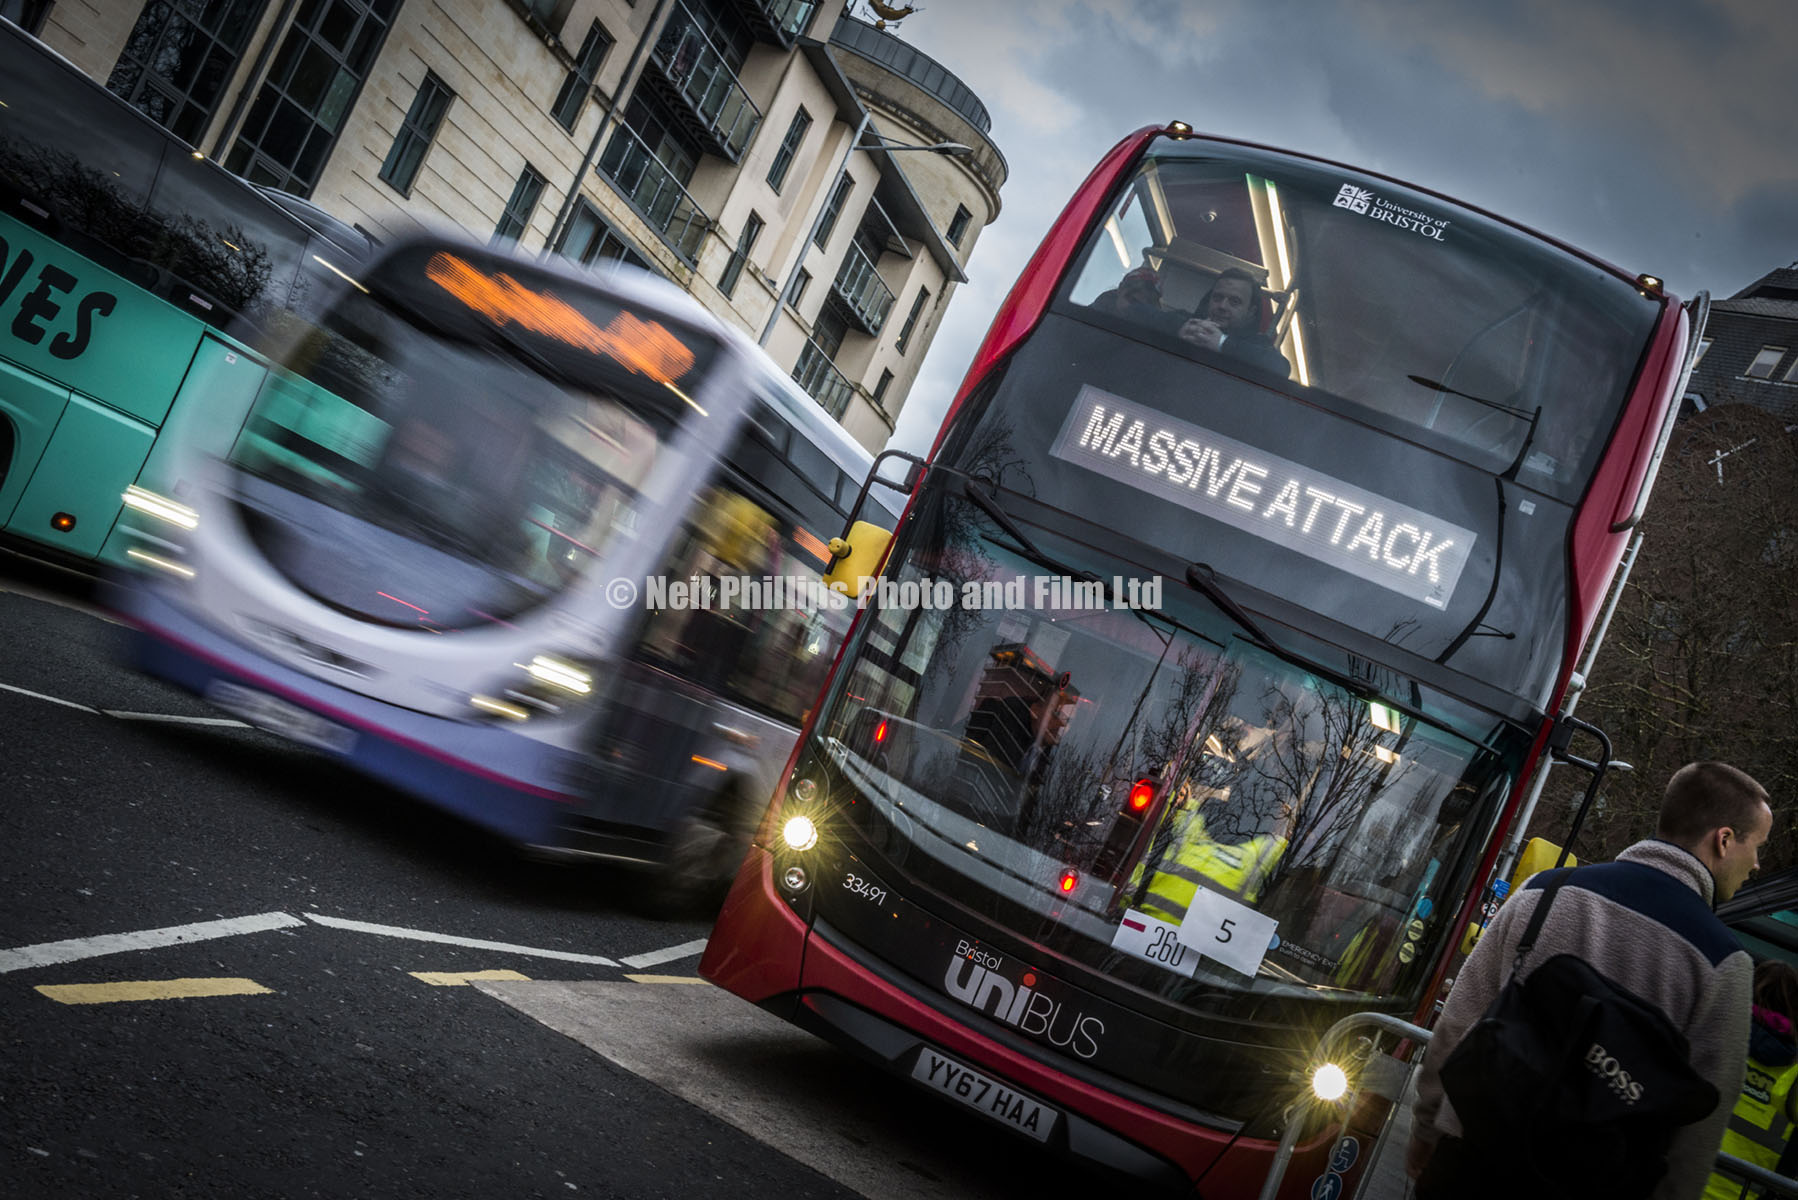 Massive Attack Bus, Bristol